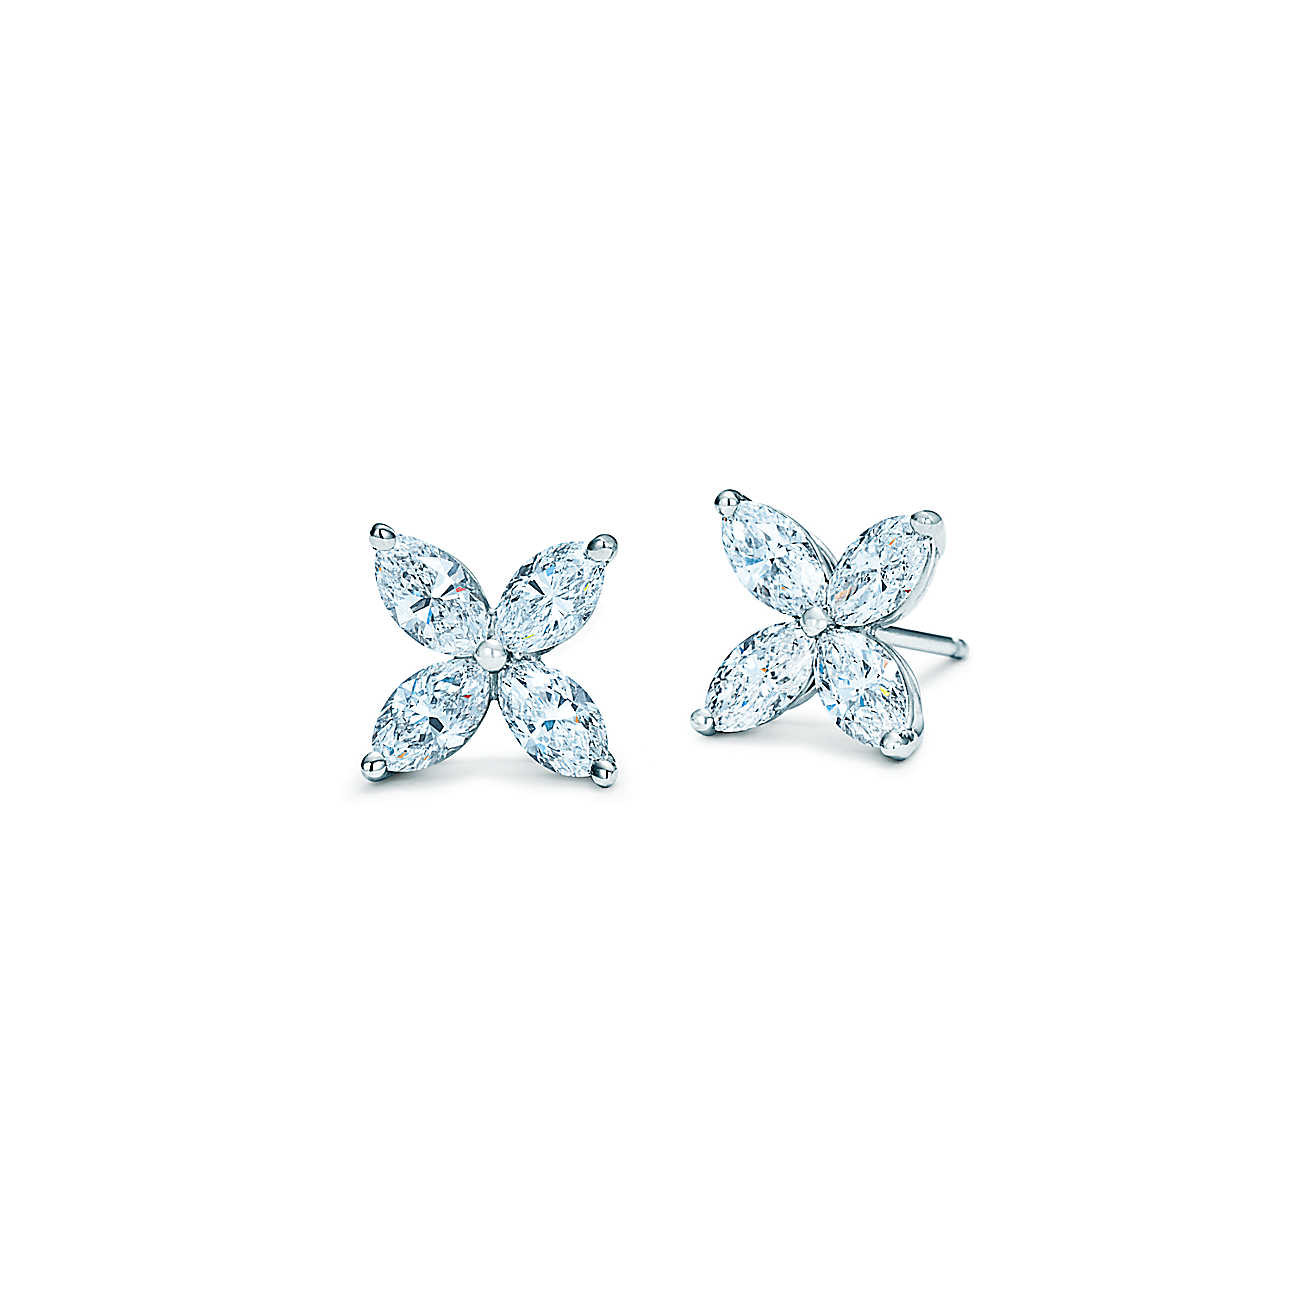 Tiffany Victoria Earrings
 Tiffany Victoria earrings in platinum with diamonds